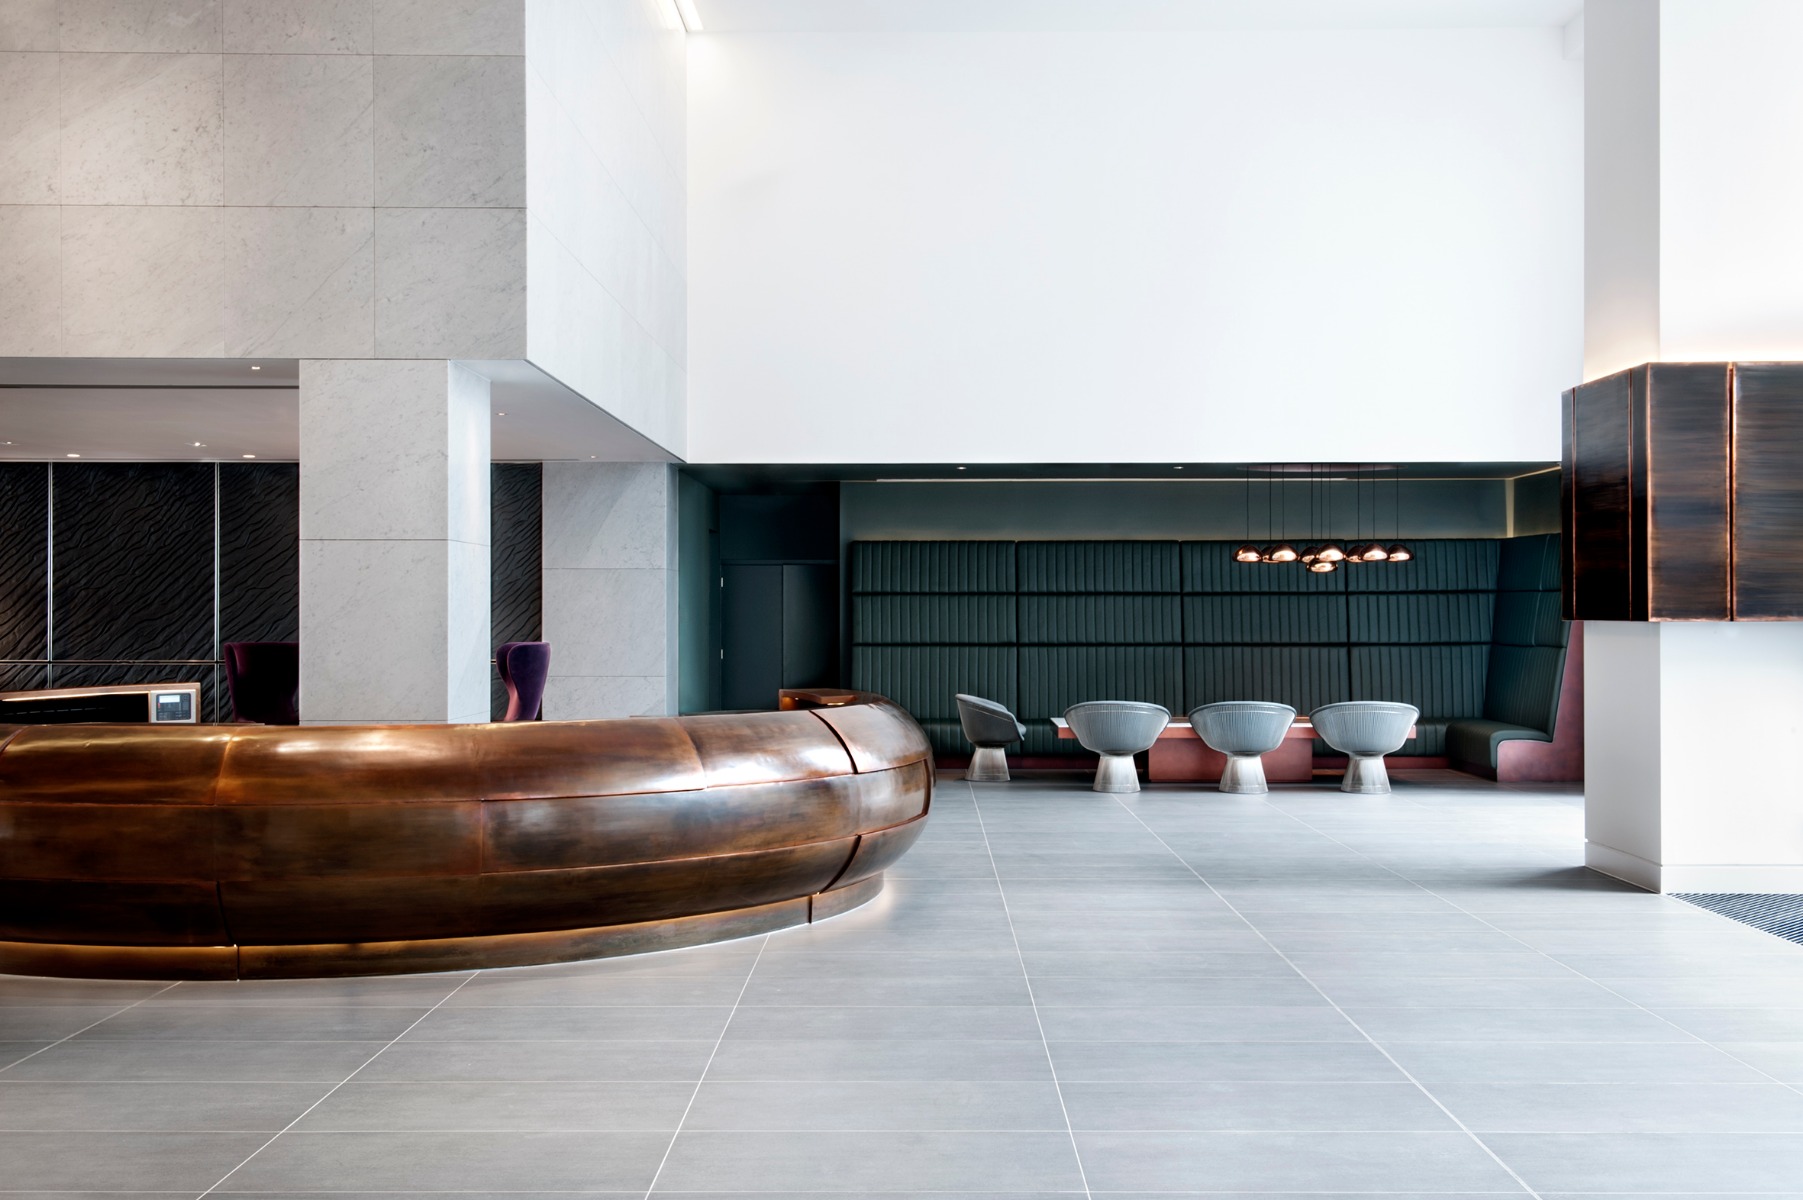 Mondrian Hotel in London, interiors by Tom Dixon's Design Research Studio.